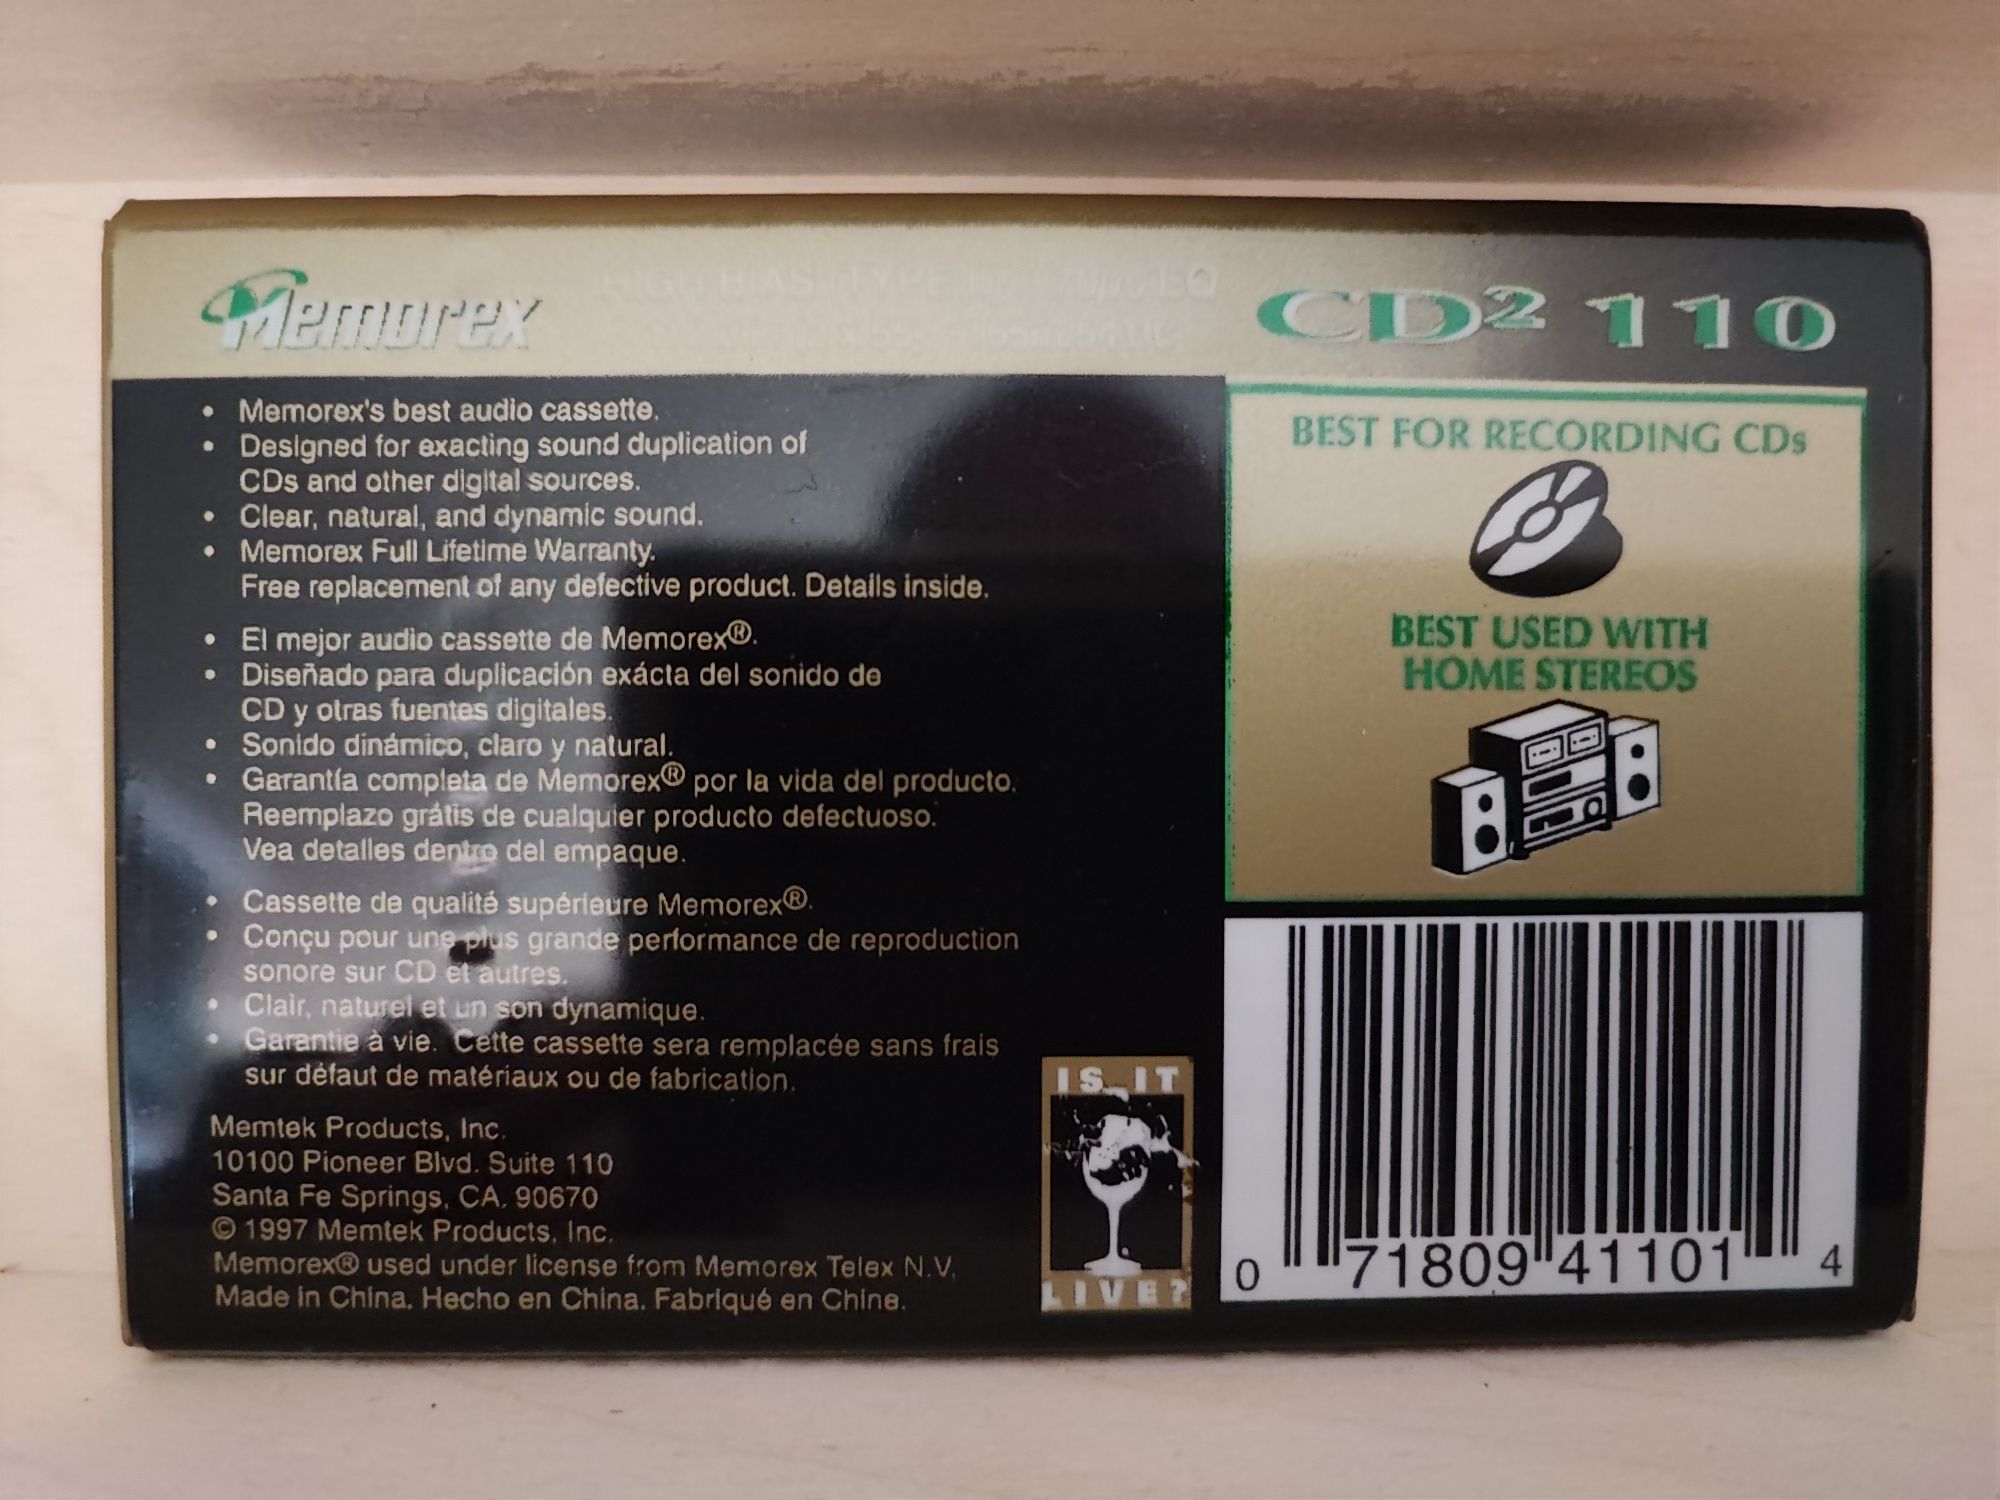 Cassette Memorex CD2 C110